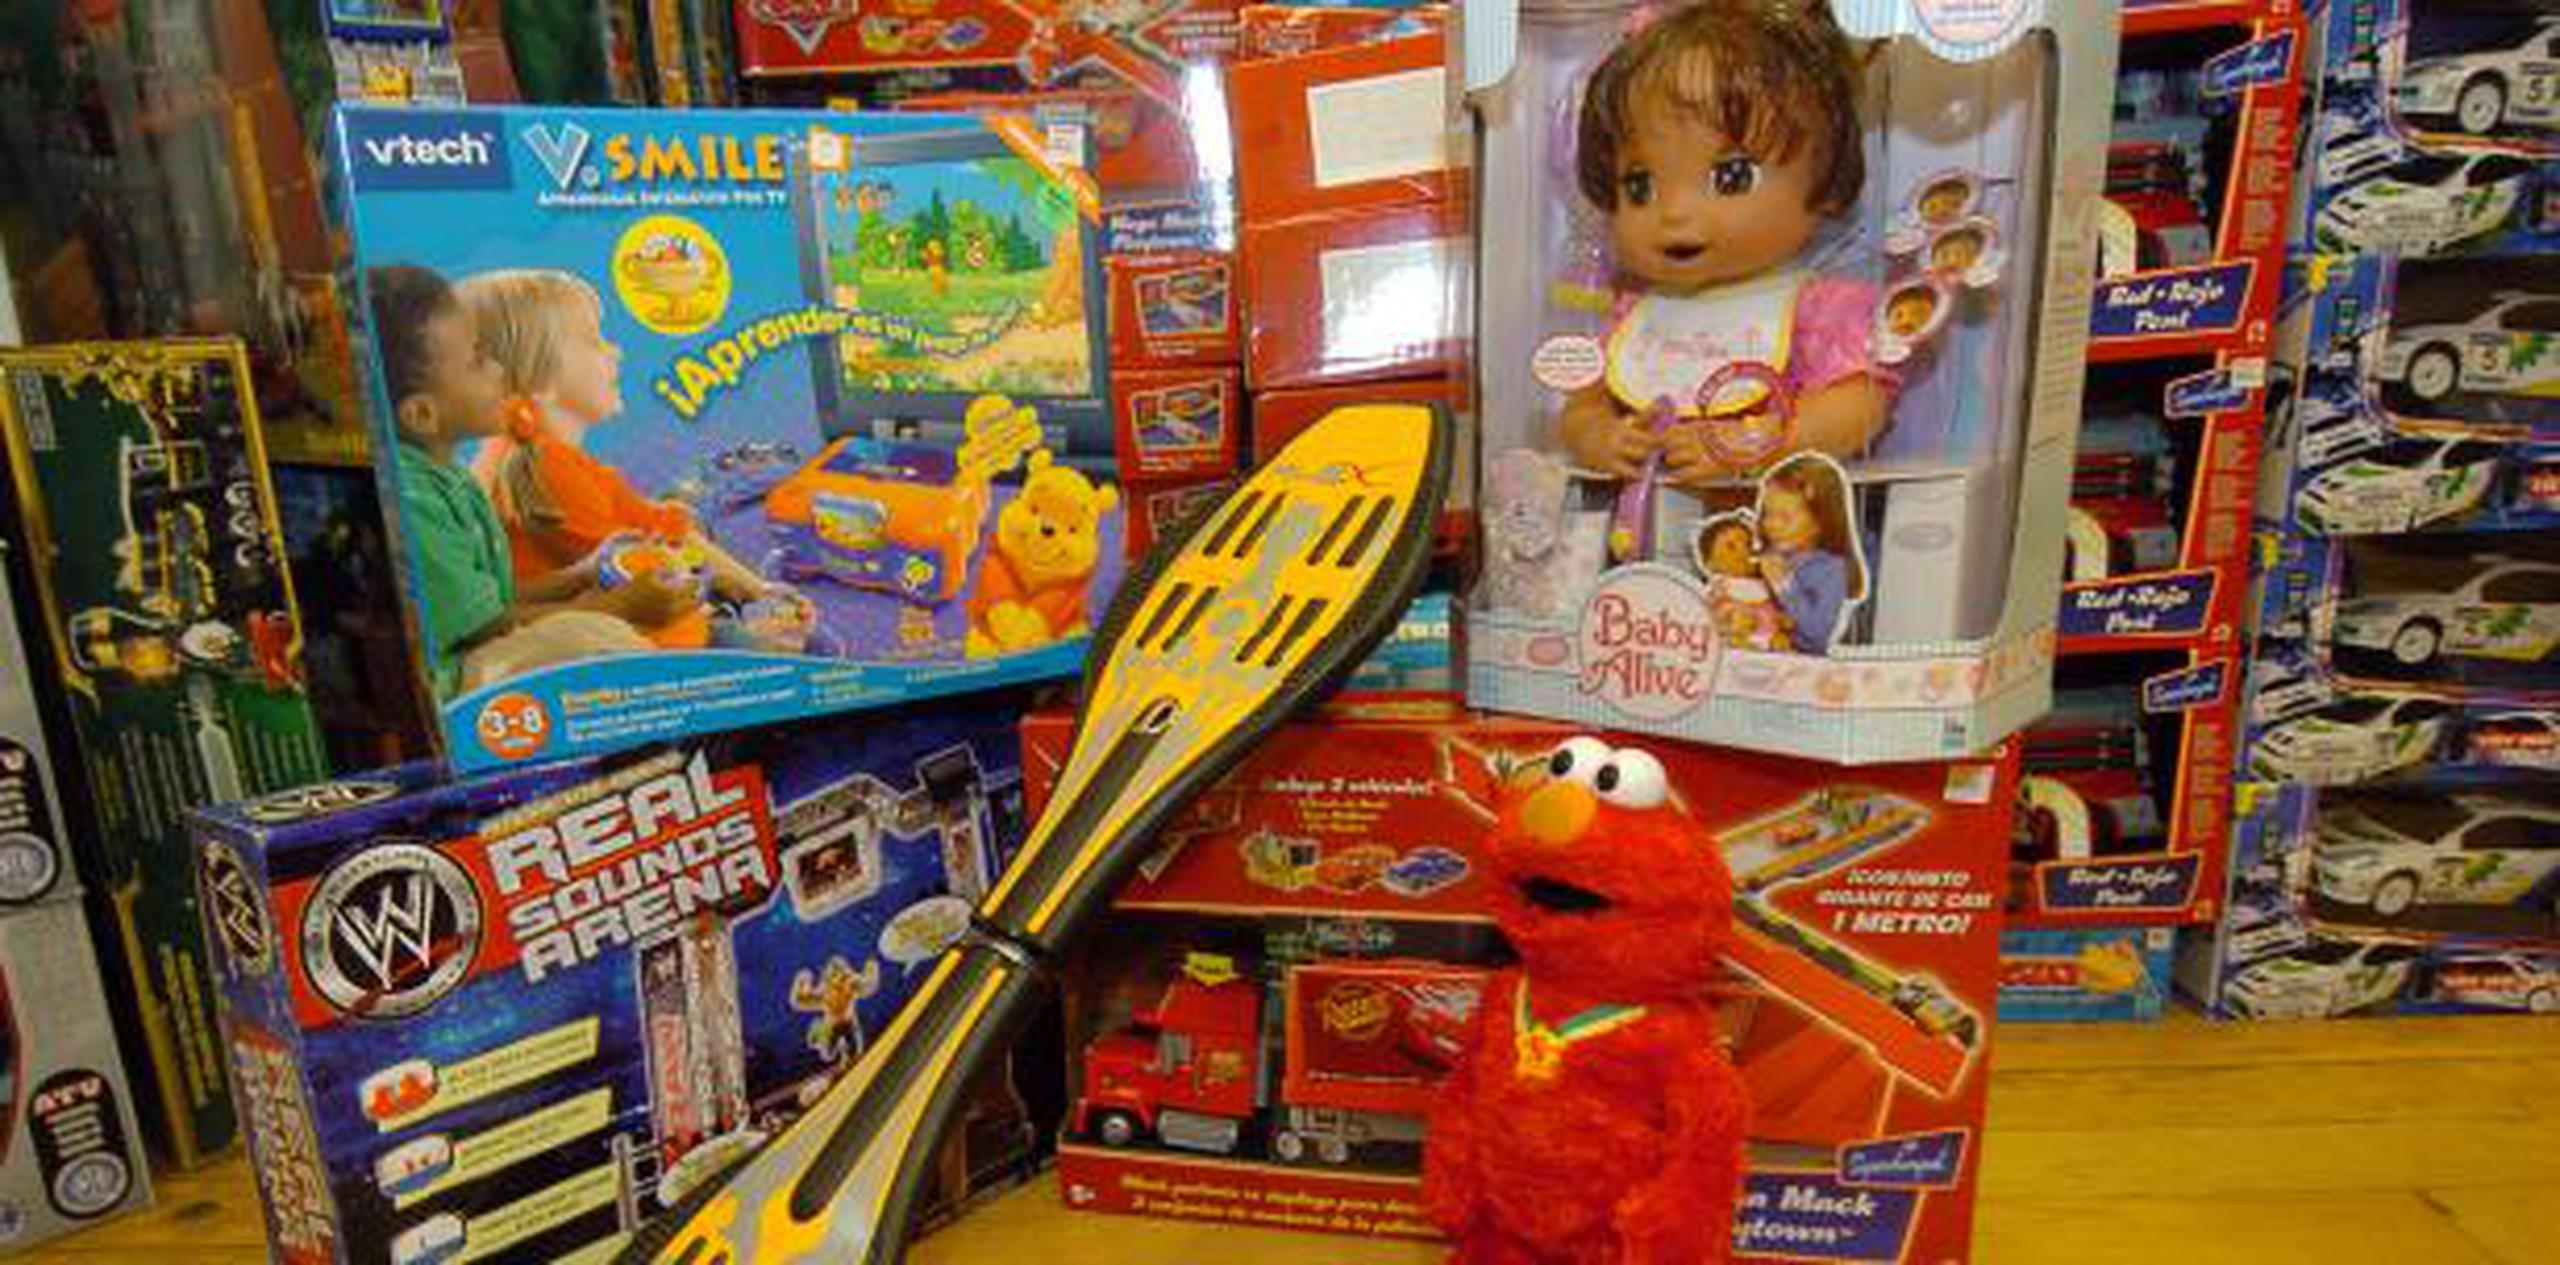 La iniciativa invita a que los consumidores donen juguetes nuevos en cualquiera de las 12 localidades de Burlington a través de toda la isla. (Archivo)